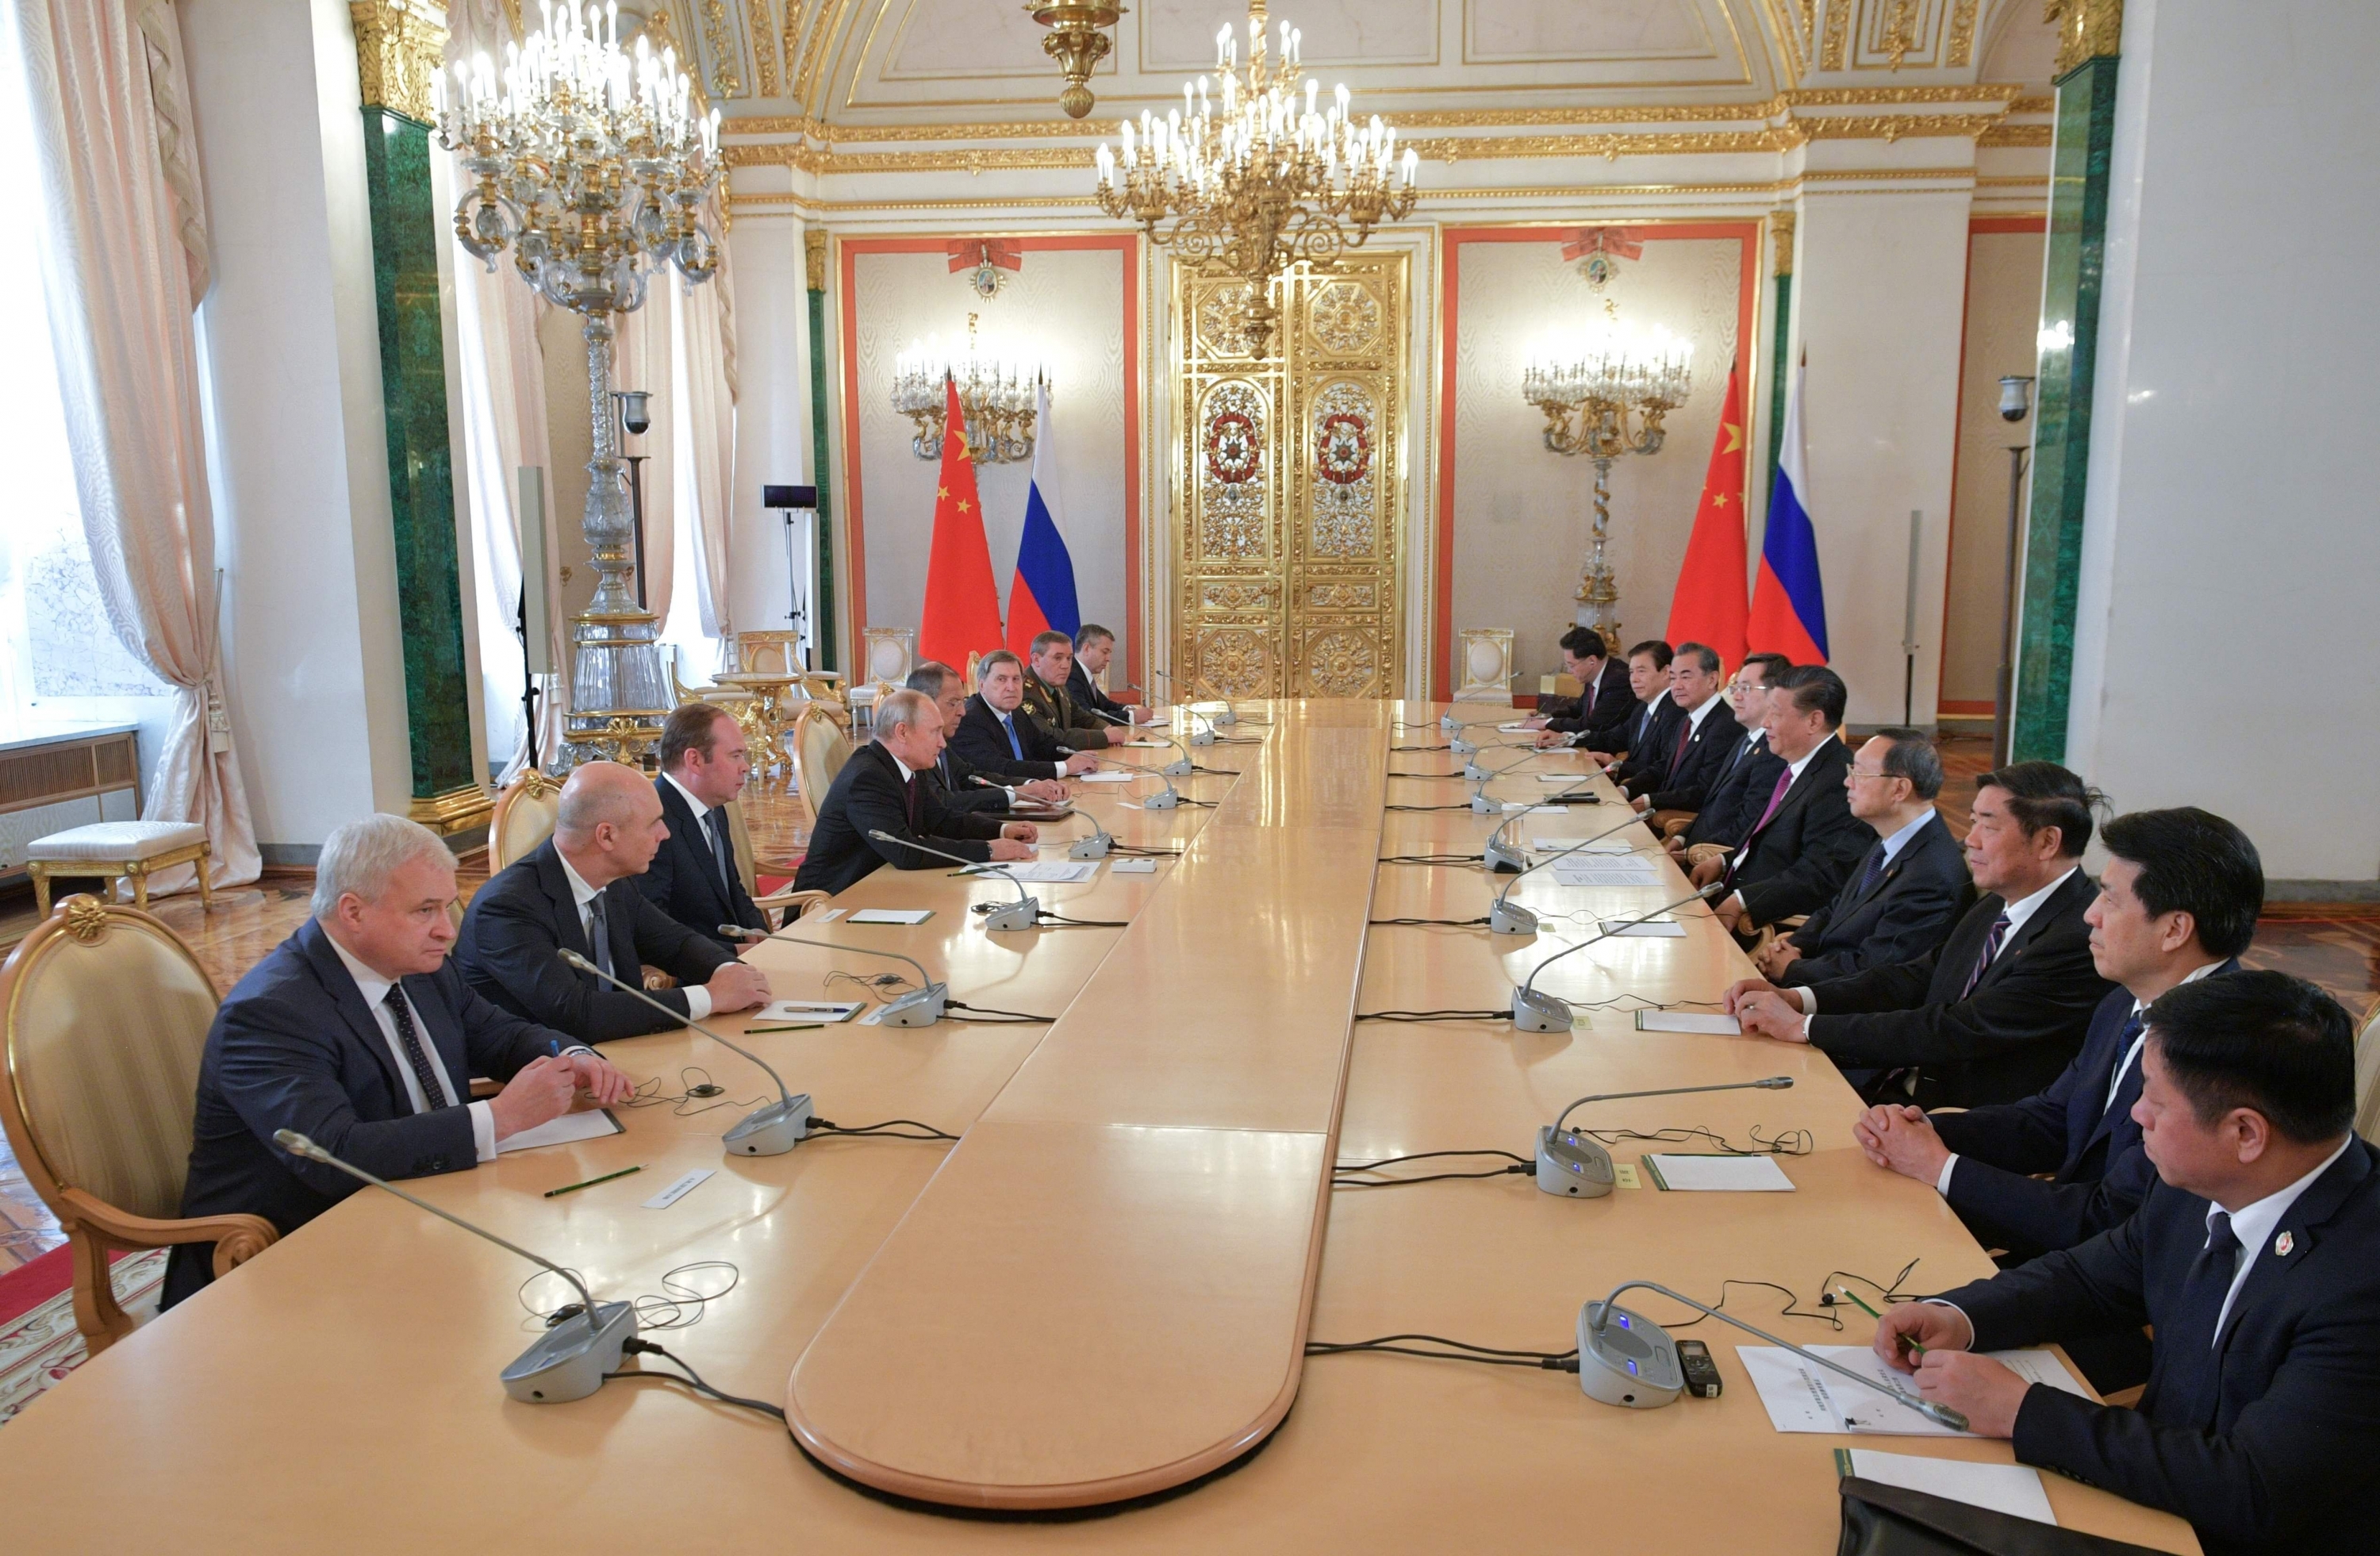 El presidente ruso, Vladimir Putin, se reunió con su homólogo chino Xi Jinping en el Kremlin. (Foto: AFP)